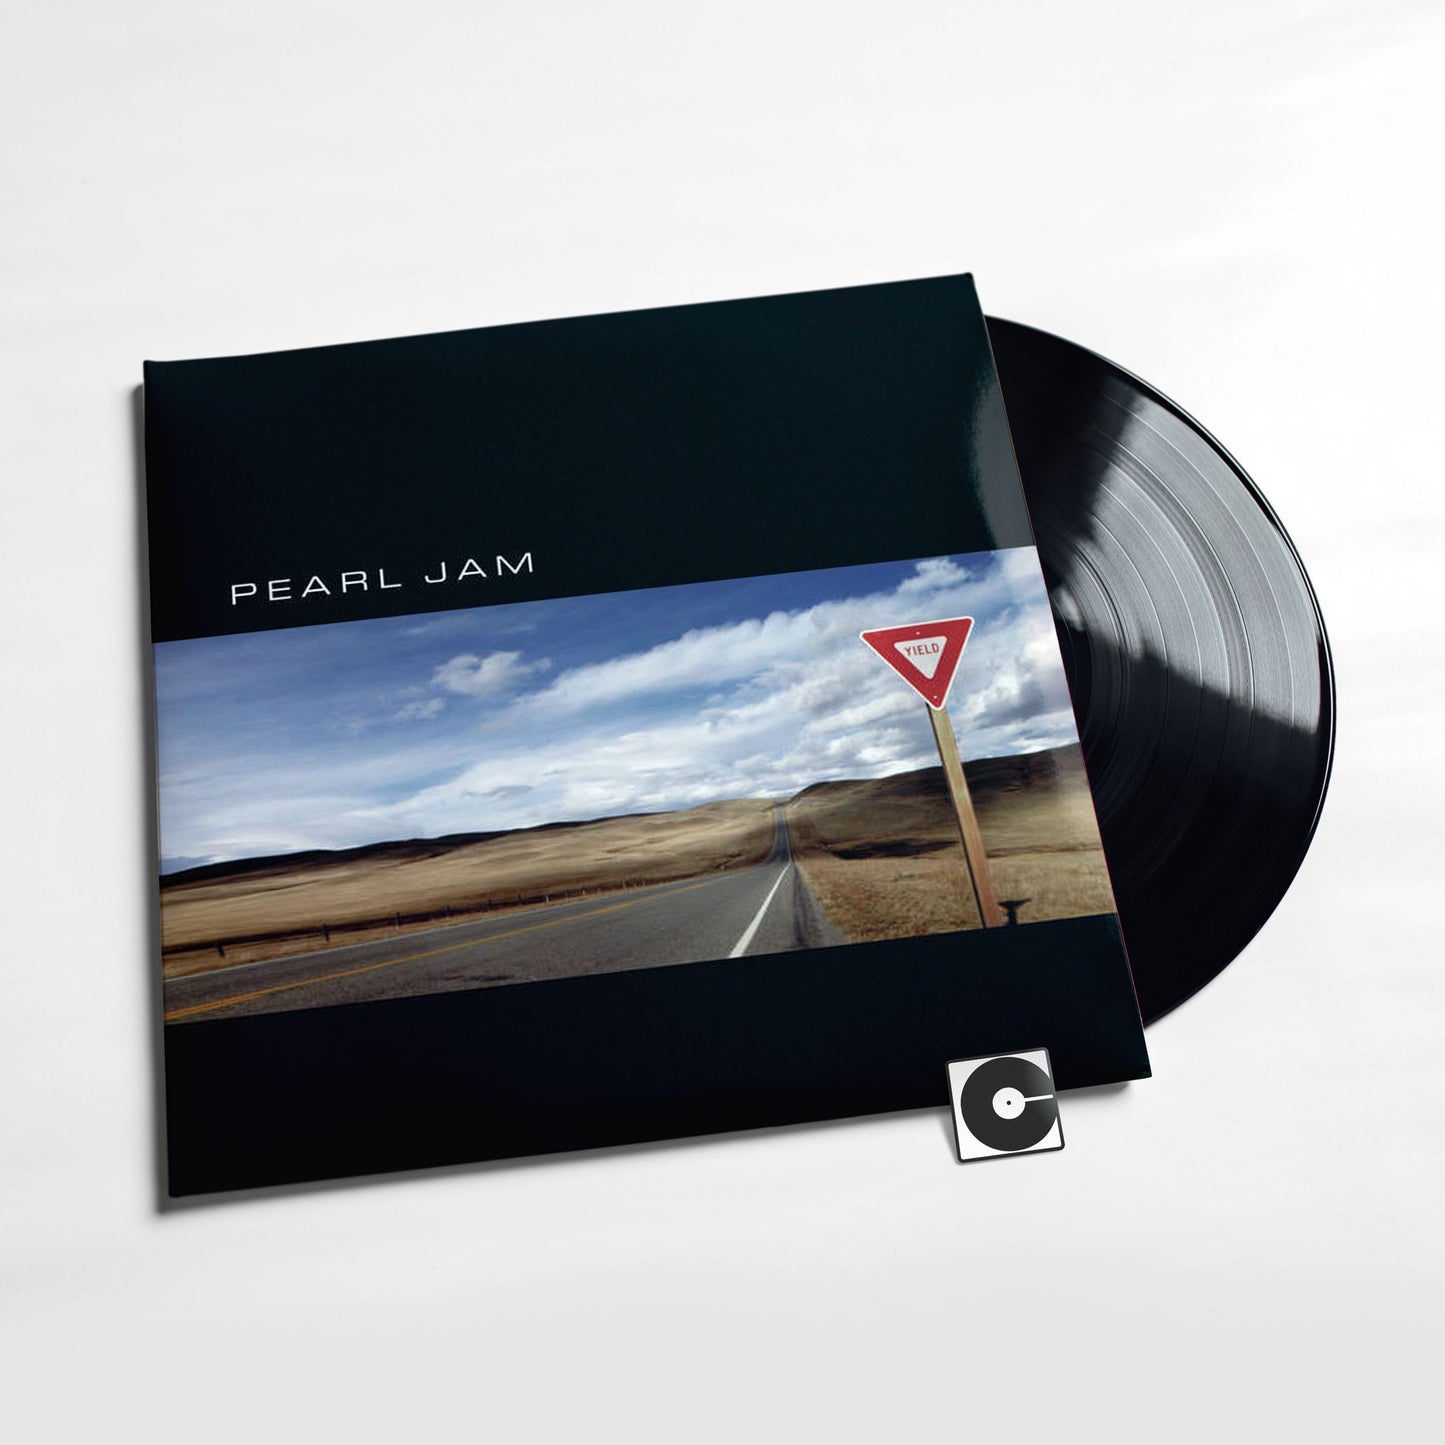 Pearl Jam - "Yield"